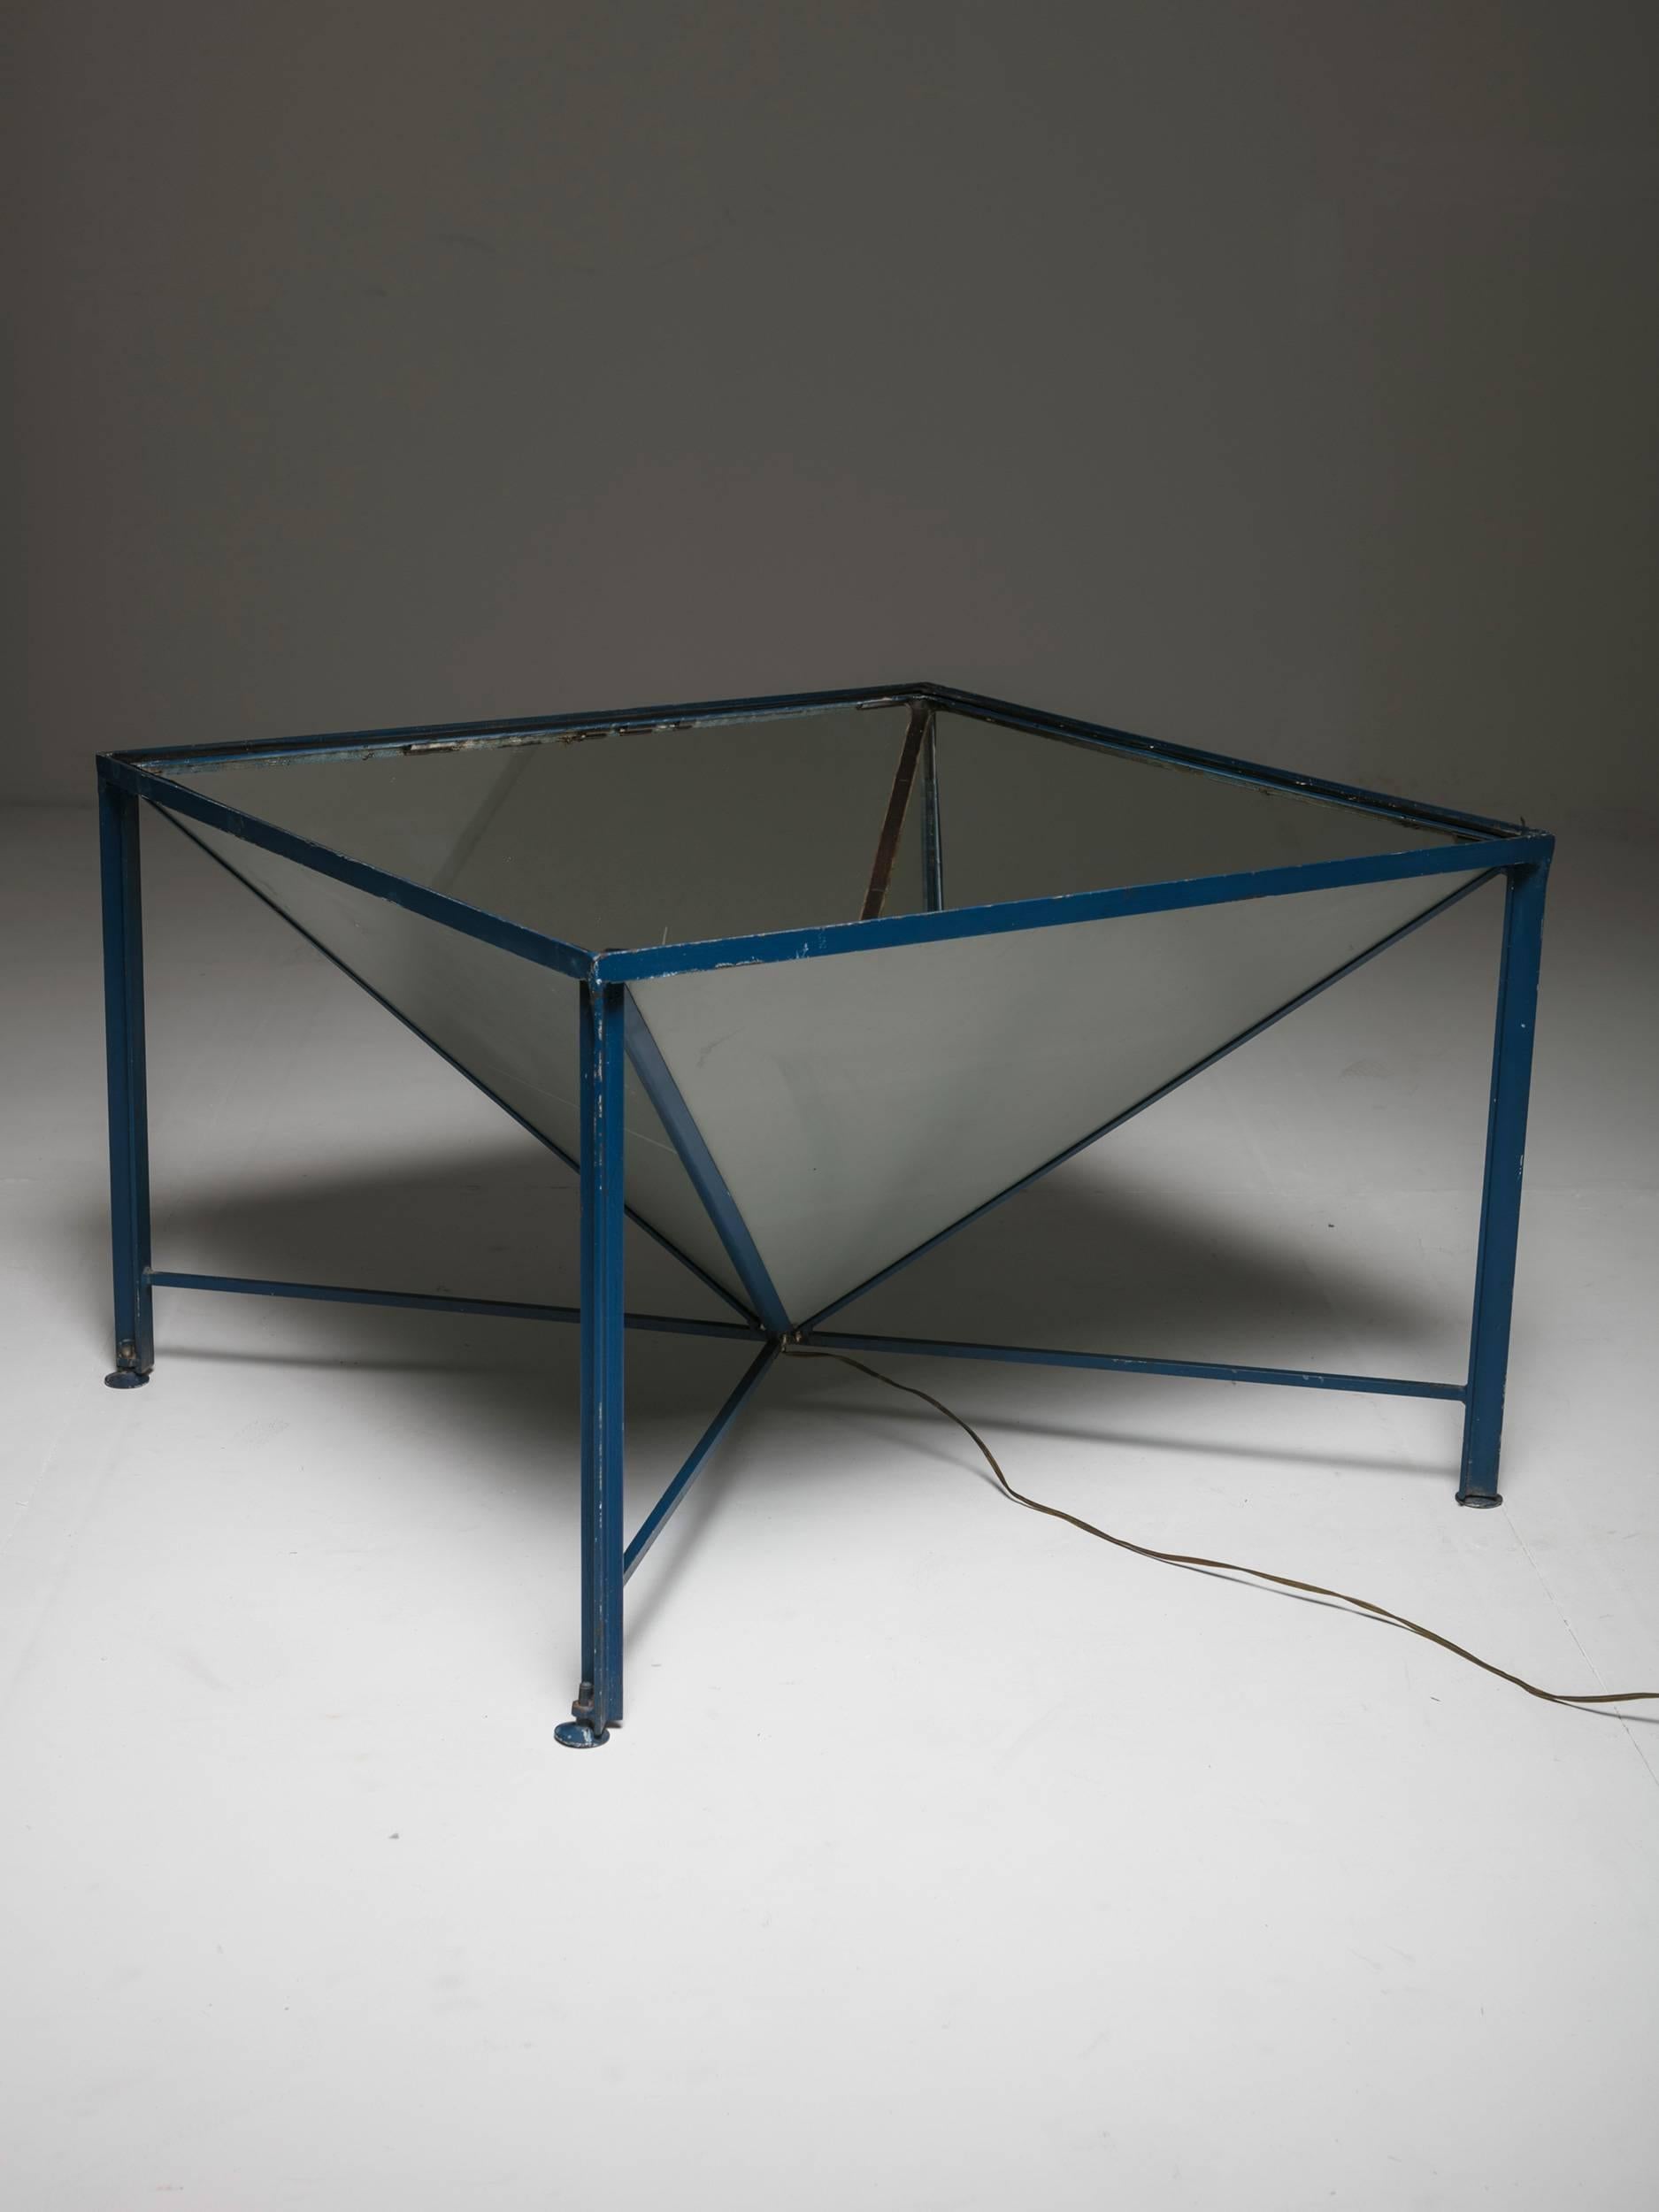 Table d'éclairage unique.
Un cadre en métal bleu émaillé supporte une pyramide de verre miroitée de bas en haut avec une lumière dans la partie inférieure. Pieds réglables et plateau en verre épais et transparent.